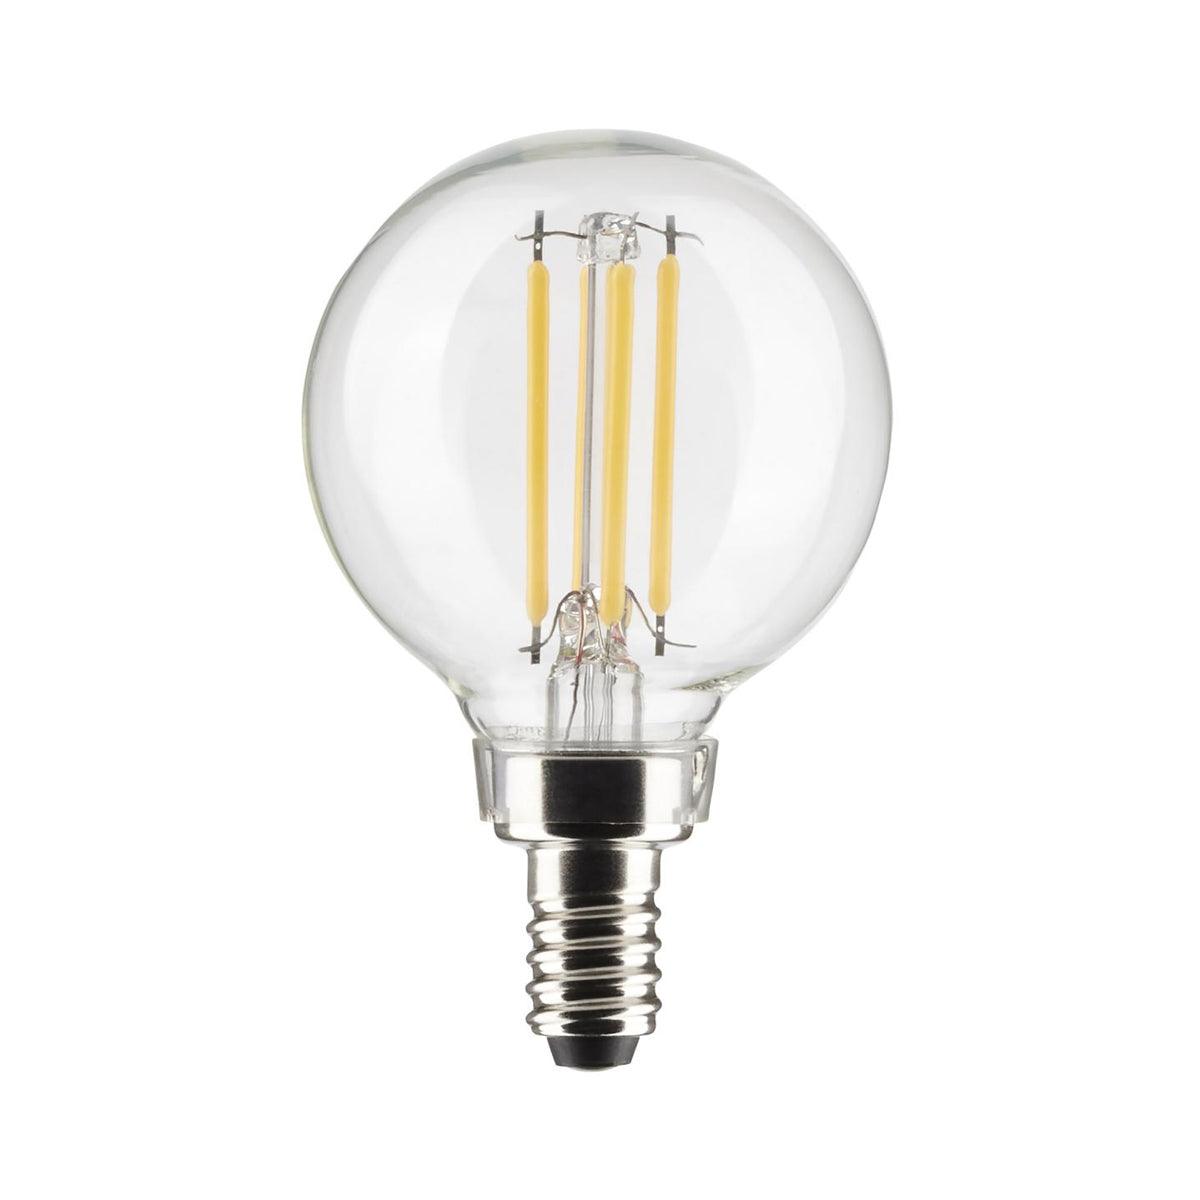 G16.5 LED Globe Bulb, 4 Watt, 350 Lumens, 2700K, E12 Candelabra Base, Clear Finish, Pack Of 2